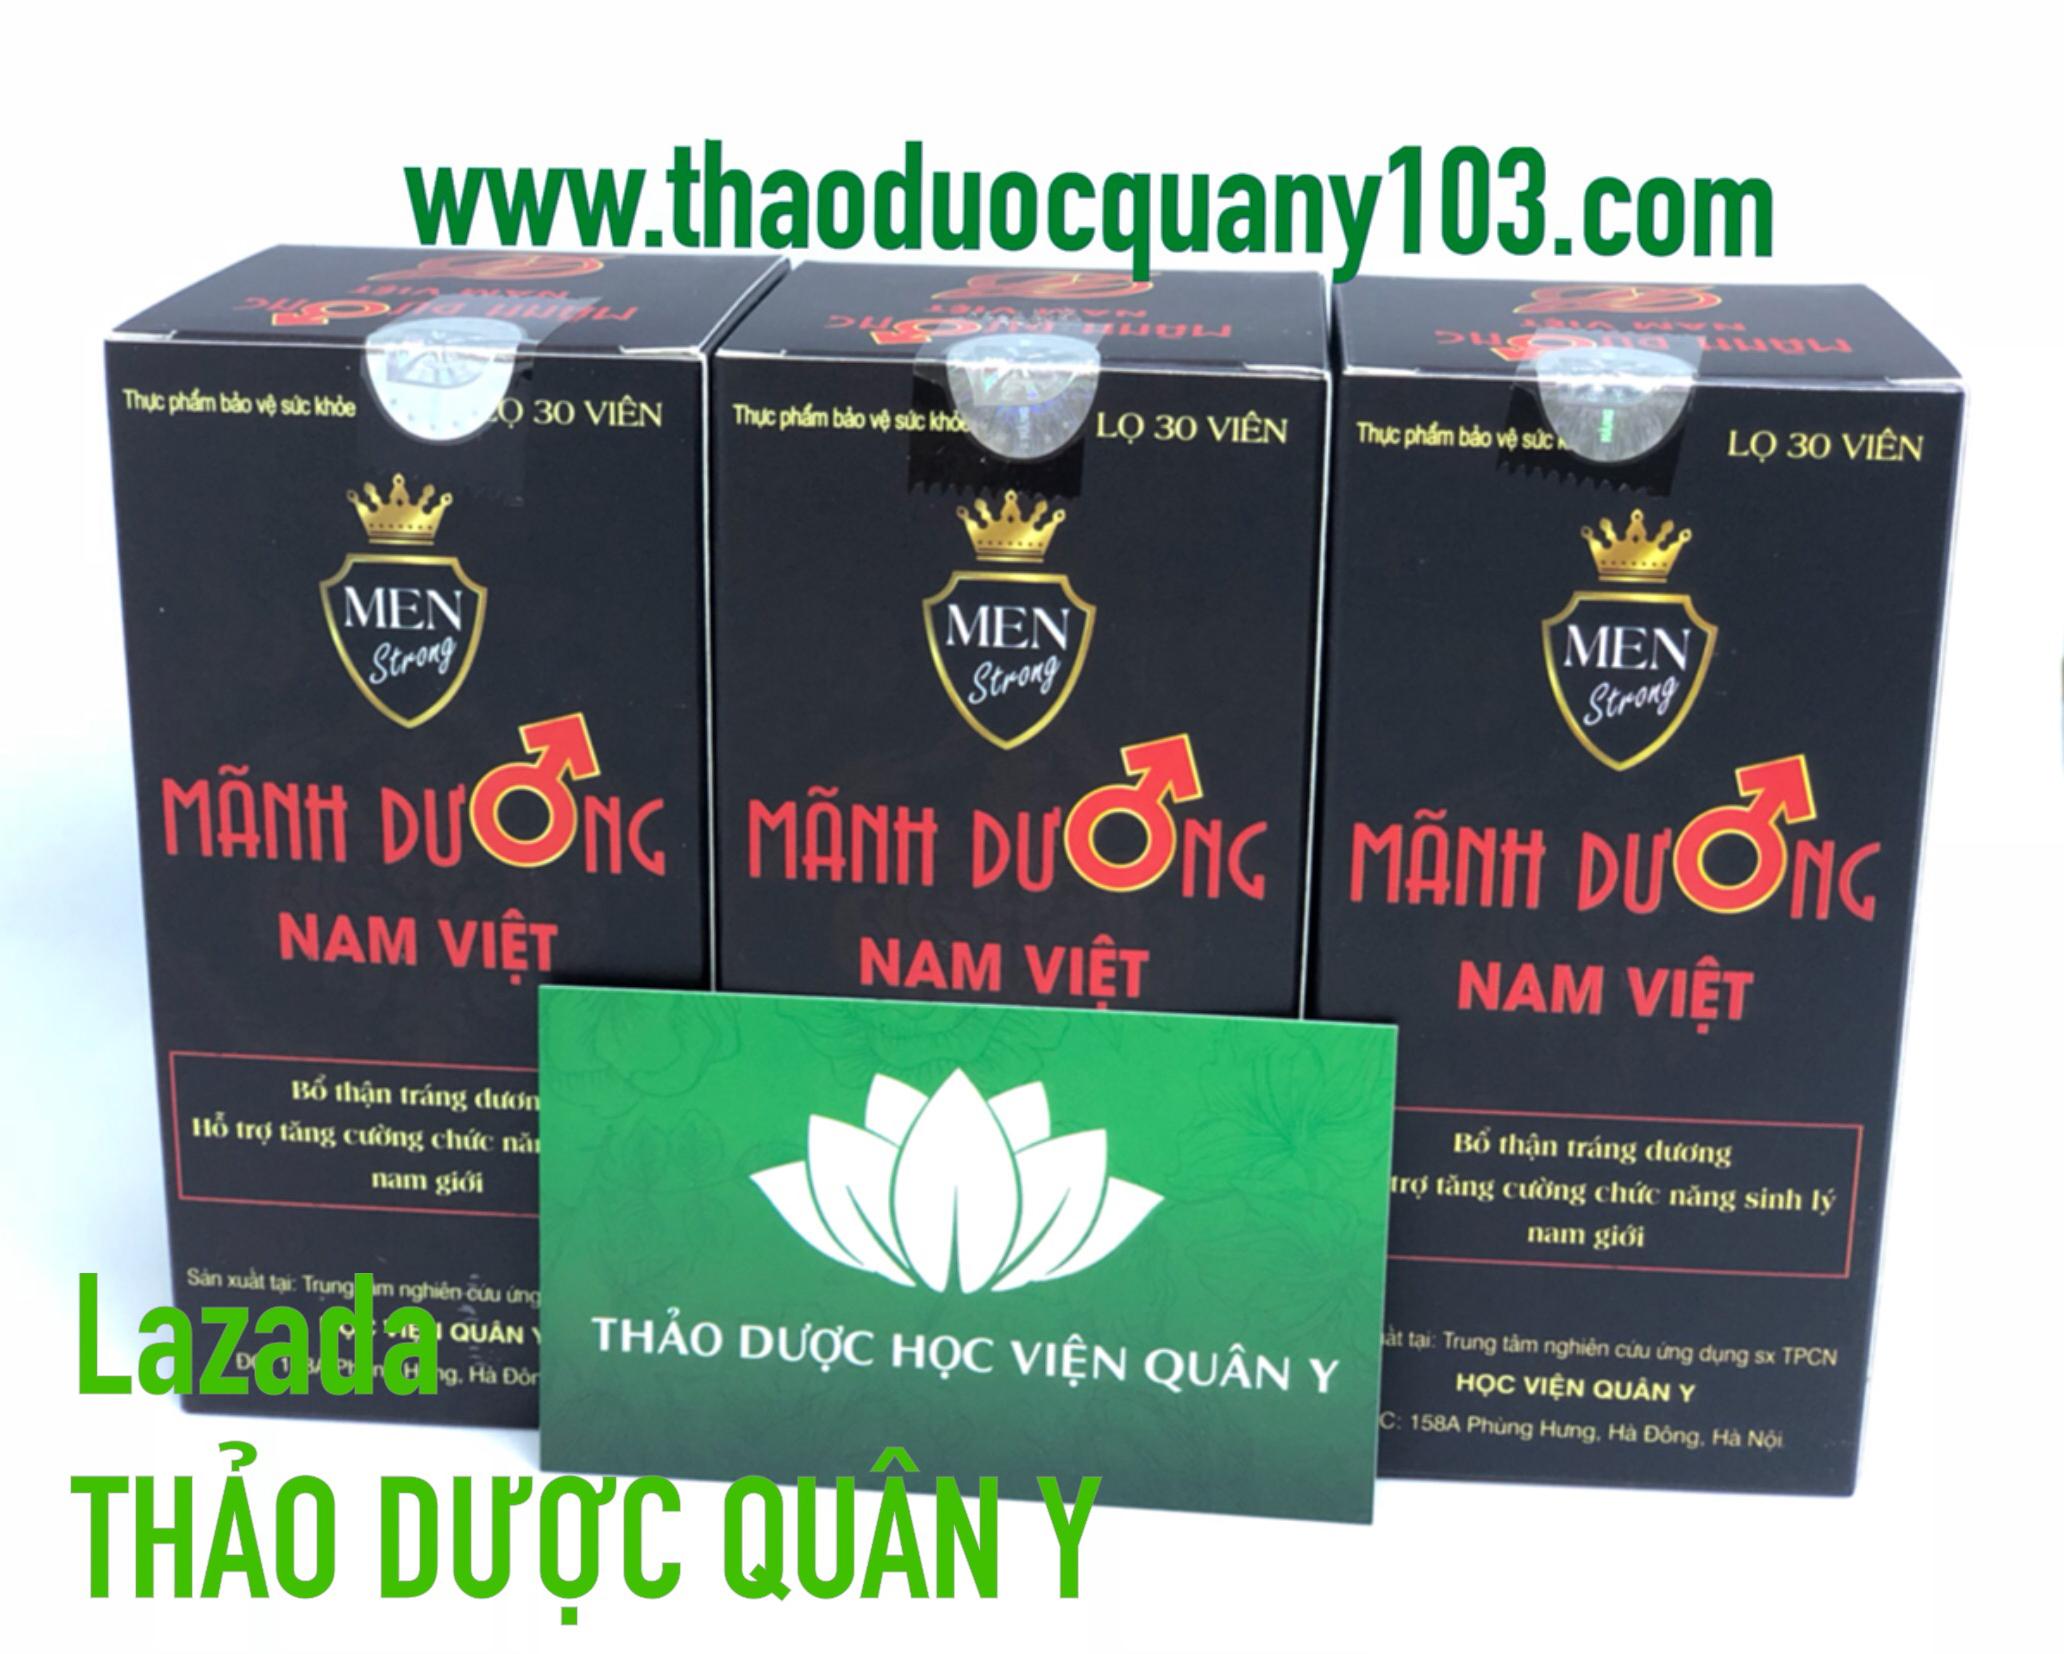 03 hộp Mãnh Dương Nam Việt - HVQY